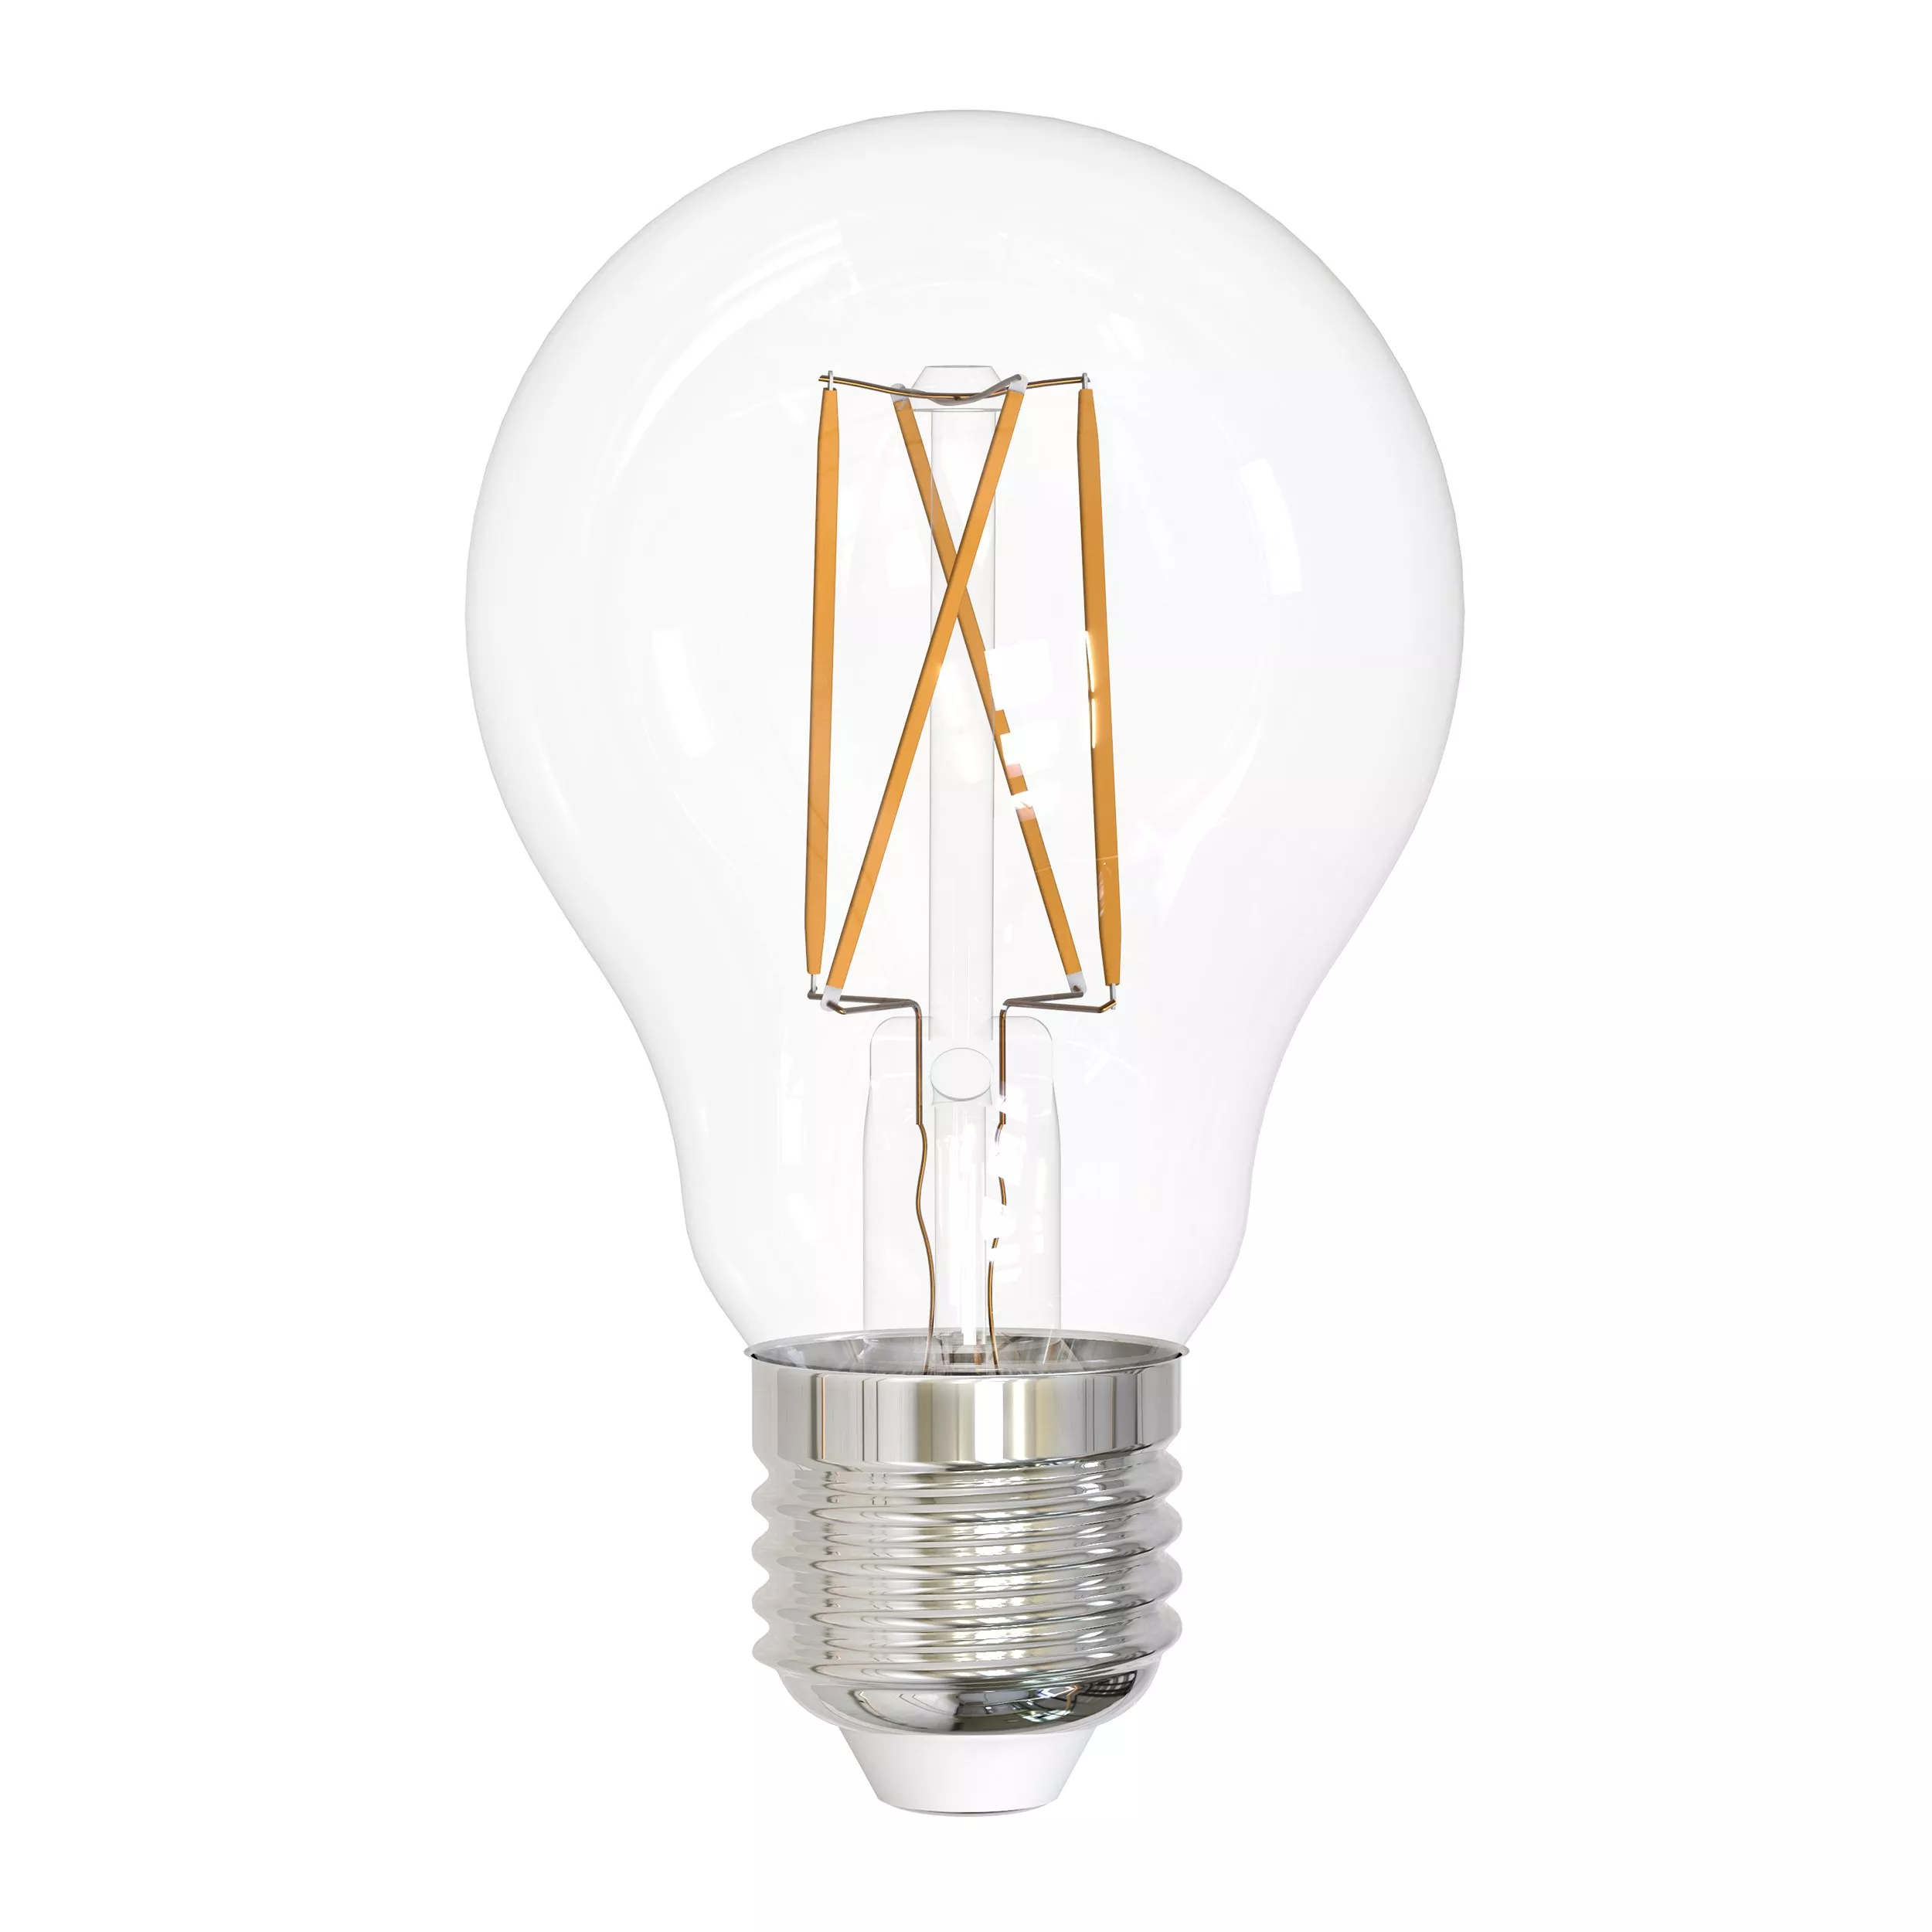 A19 5w Filament LED Light Bulb 2pk.